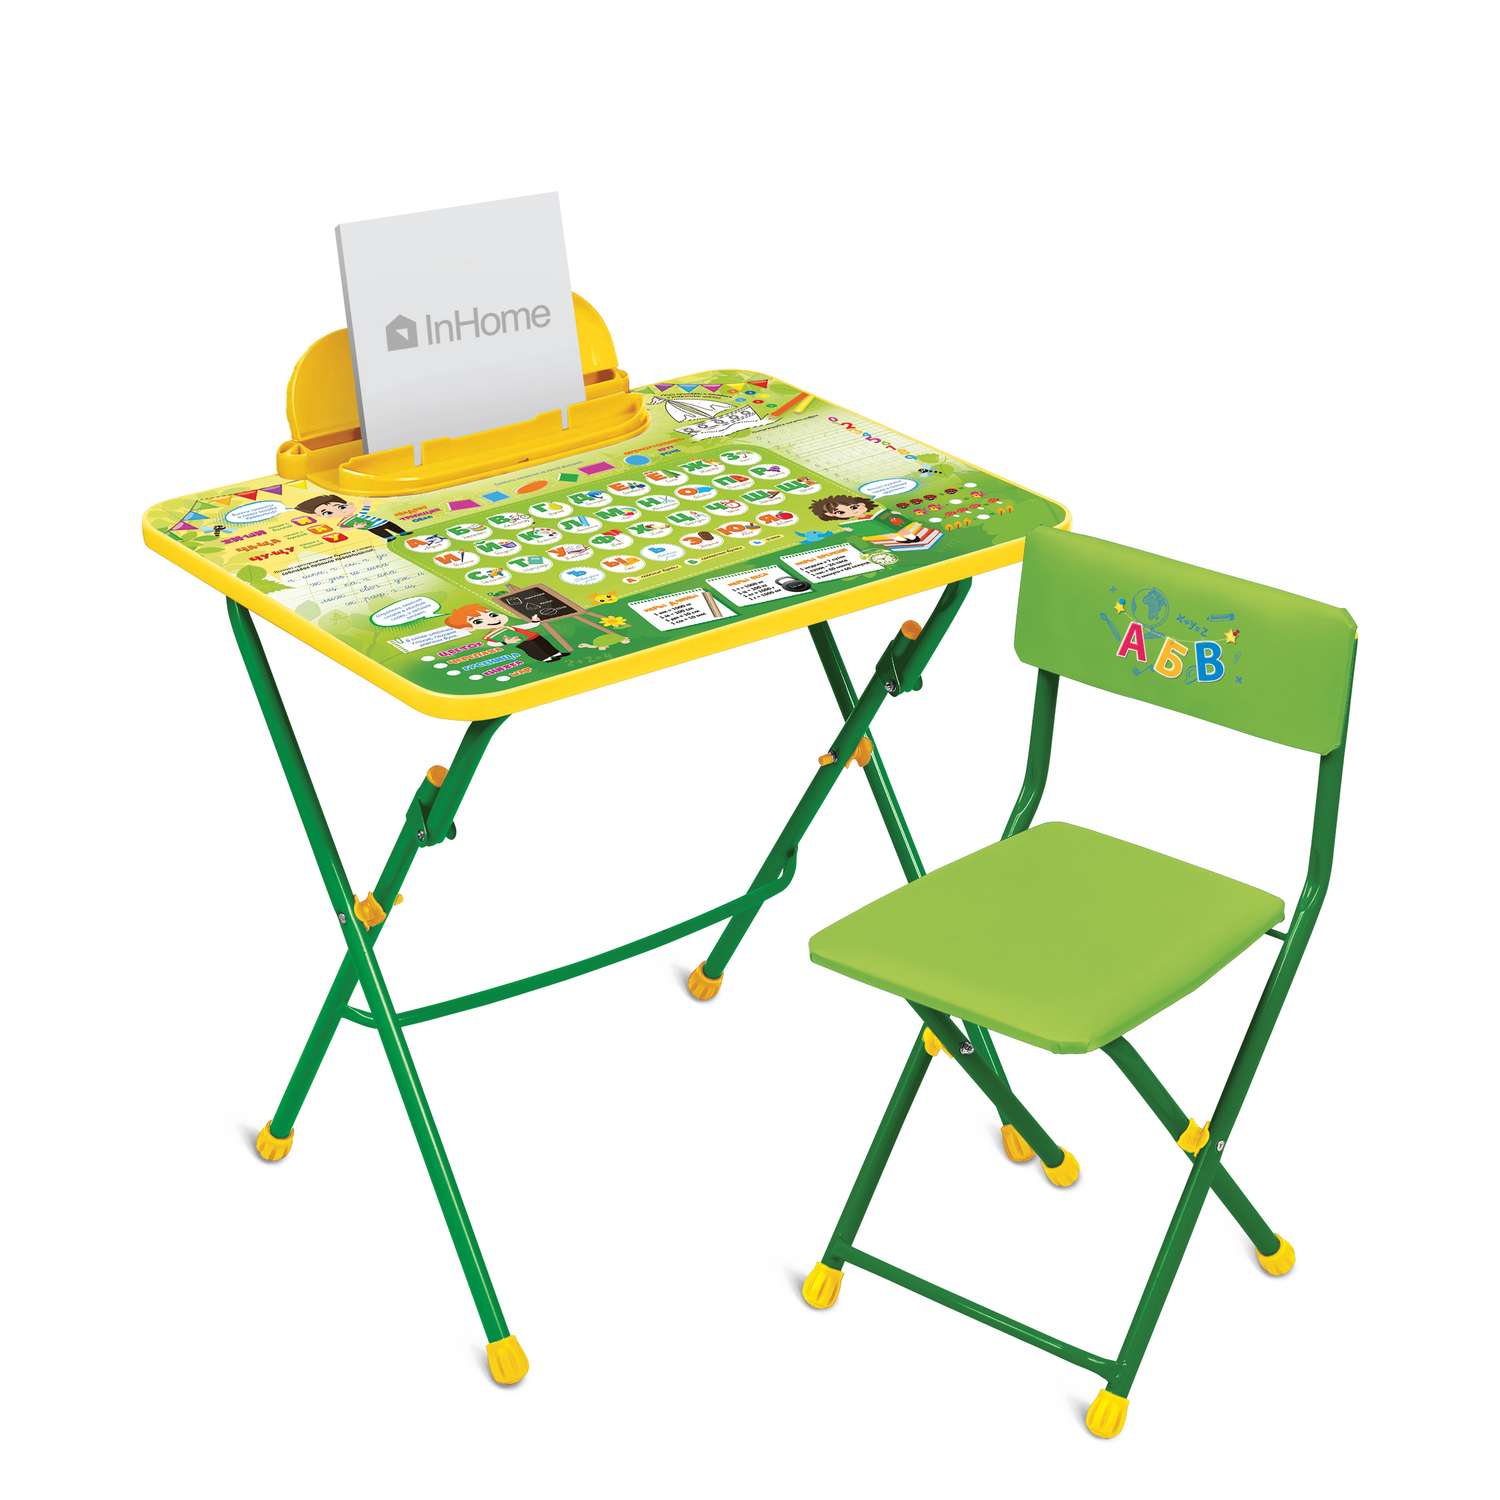 Комплект детской мебели InHome складной с алфавитом - фото 2